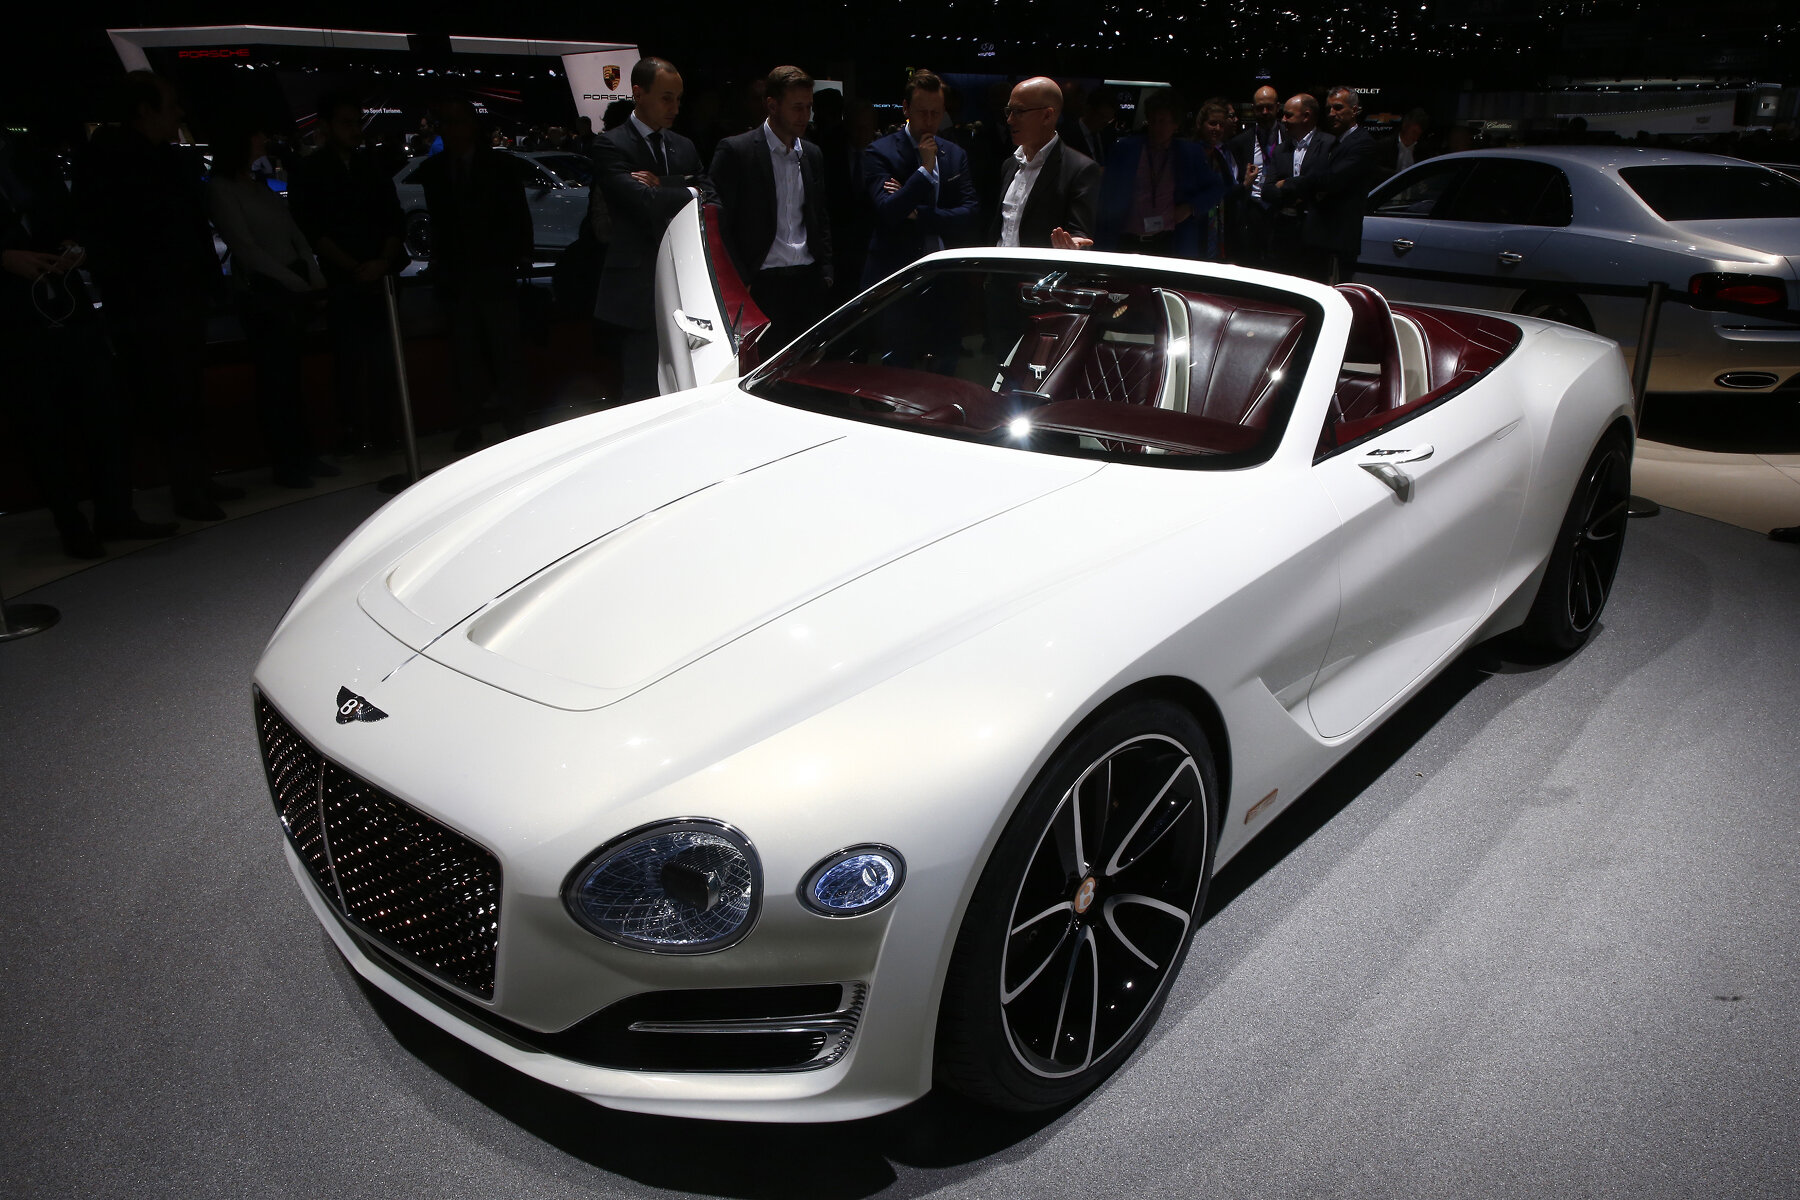 <p>В то время как большая часть шоу в Женеве &mdash; это, в первую очередь, про скорость, Bentley решили в этот раз сделать что-то экологичное. Кабриолет Bentley EXP 12 Speed 6e использует только электротягу. Пока это только концепт.</p>